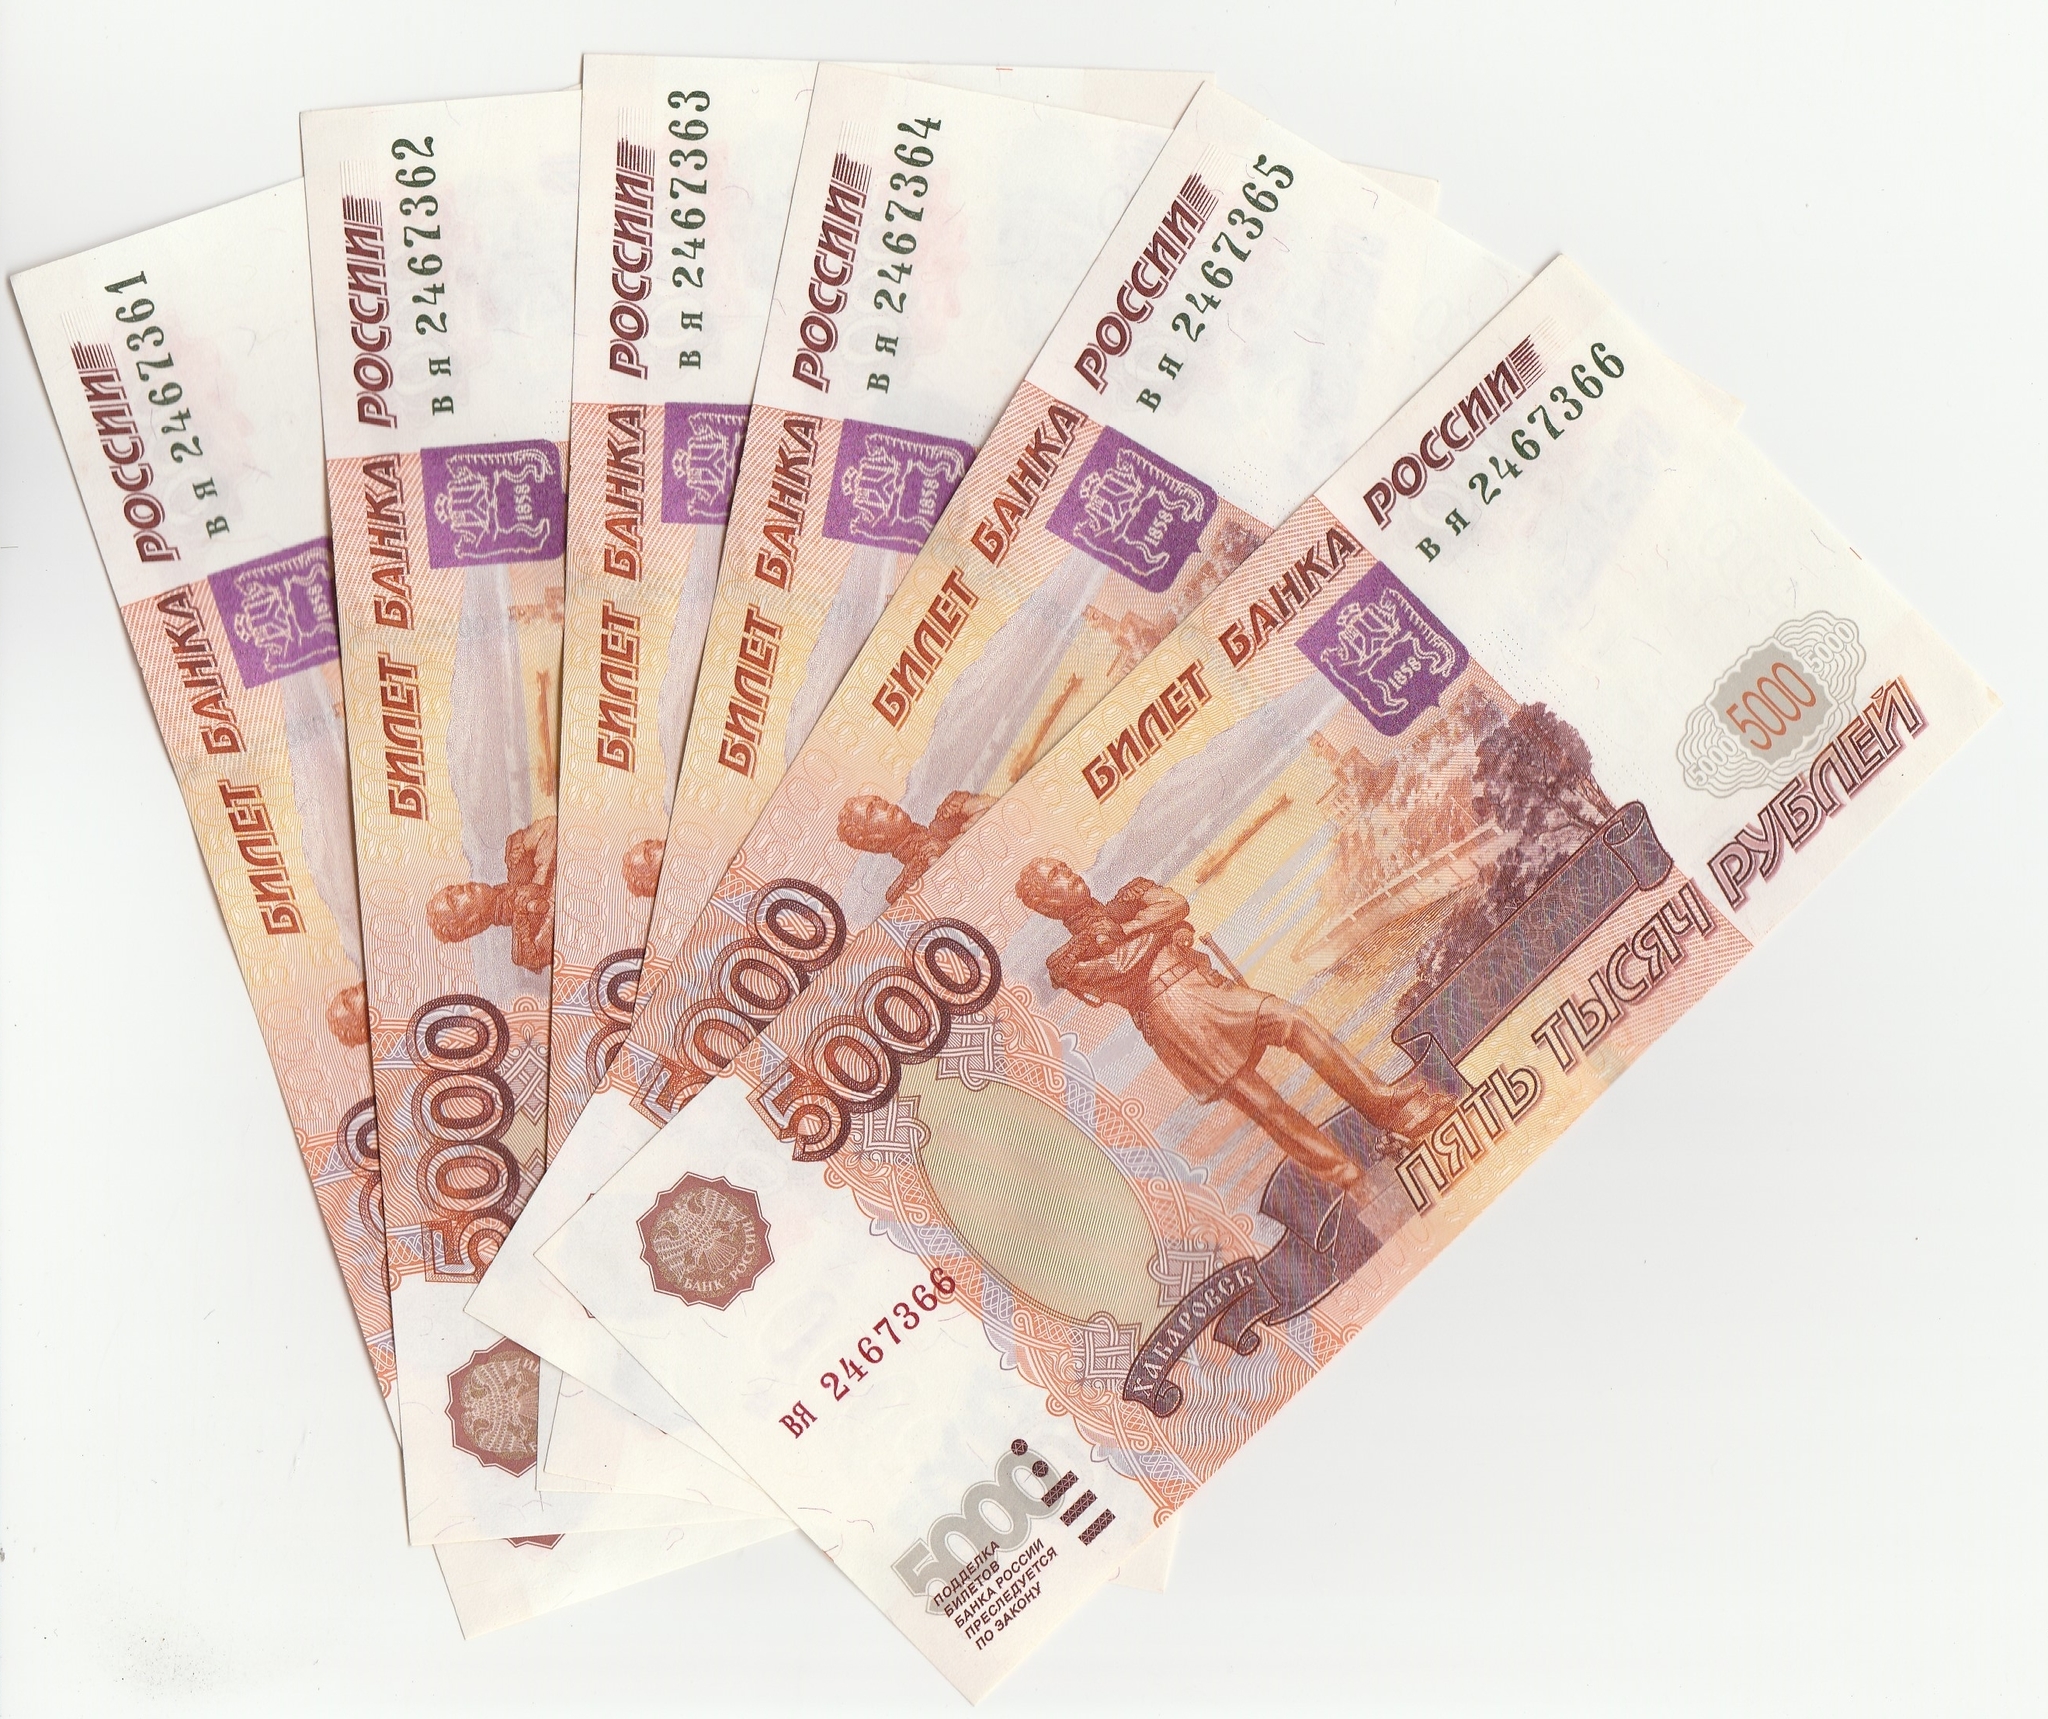 Банкнот 5000 рублей